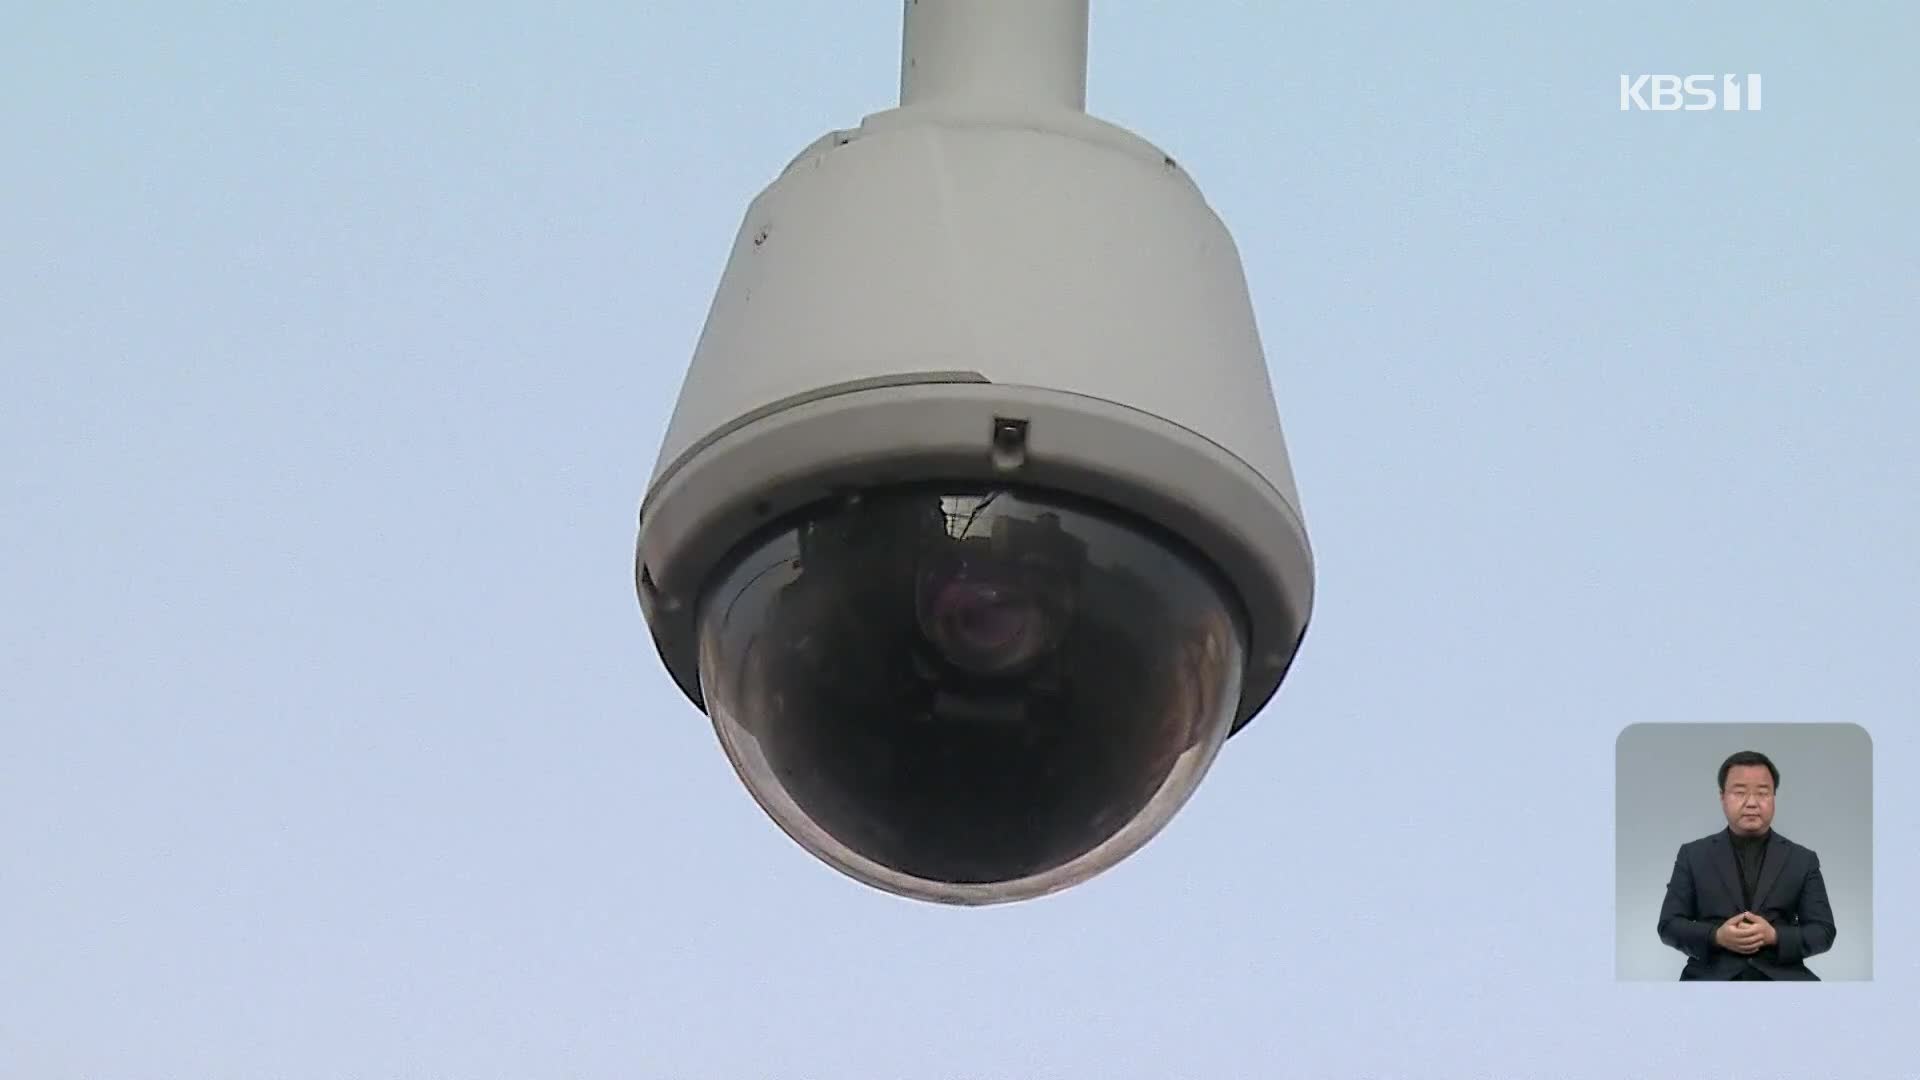 고화질·인공지능 탑재…똑똑한 CCTV의 진화